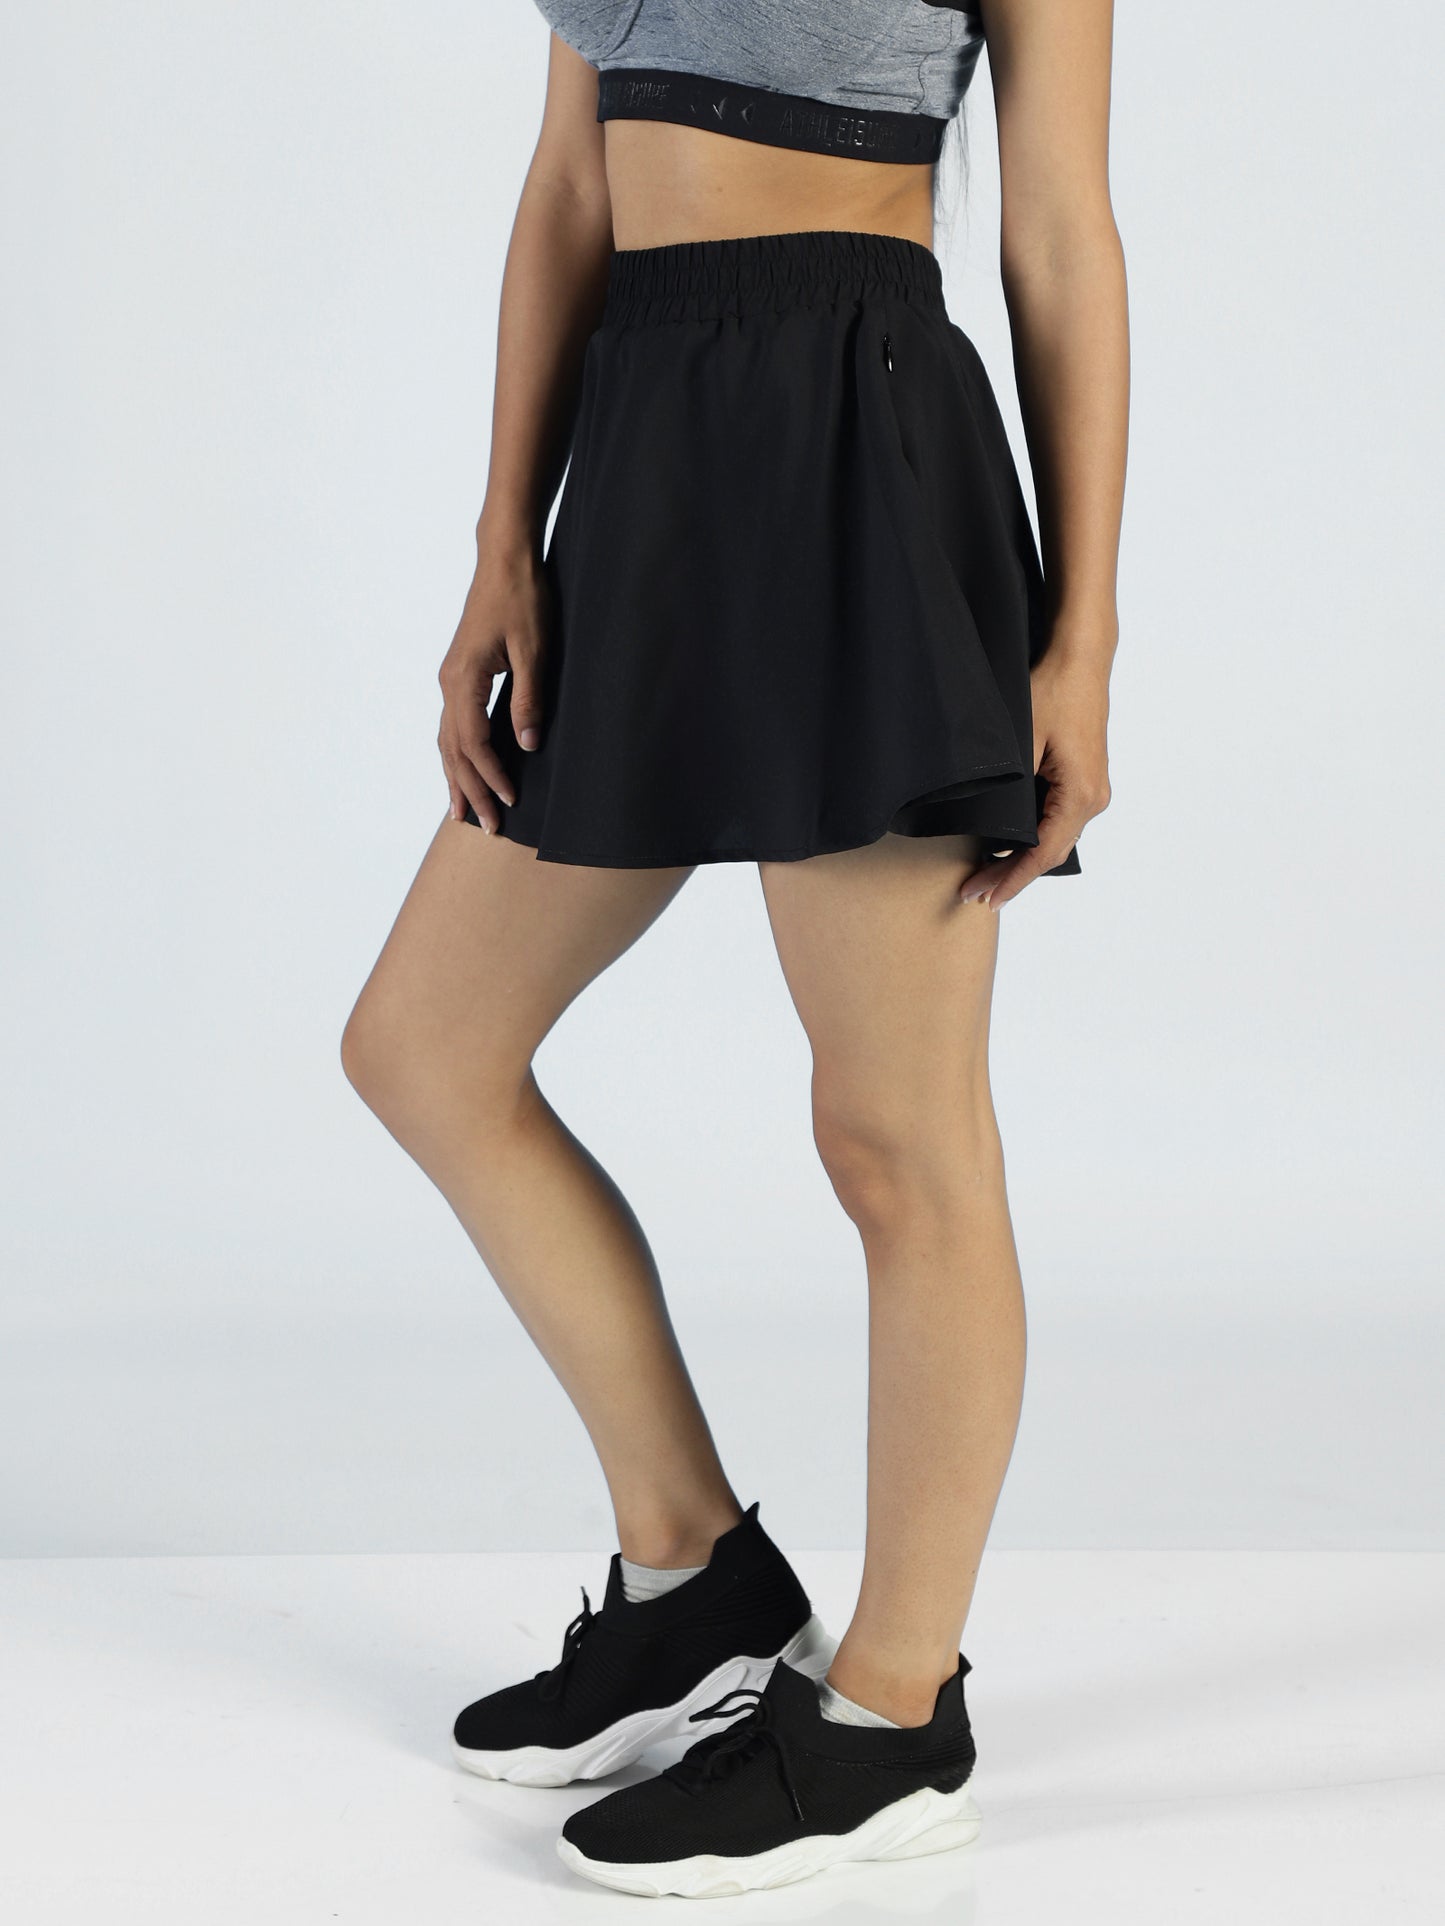 Buy Aurora Skirt Online for Women - Black